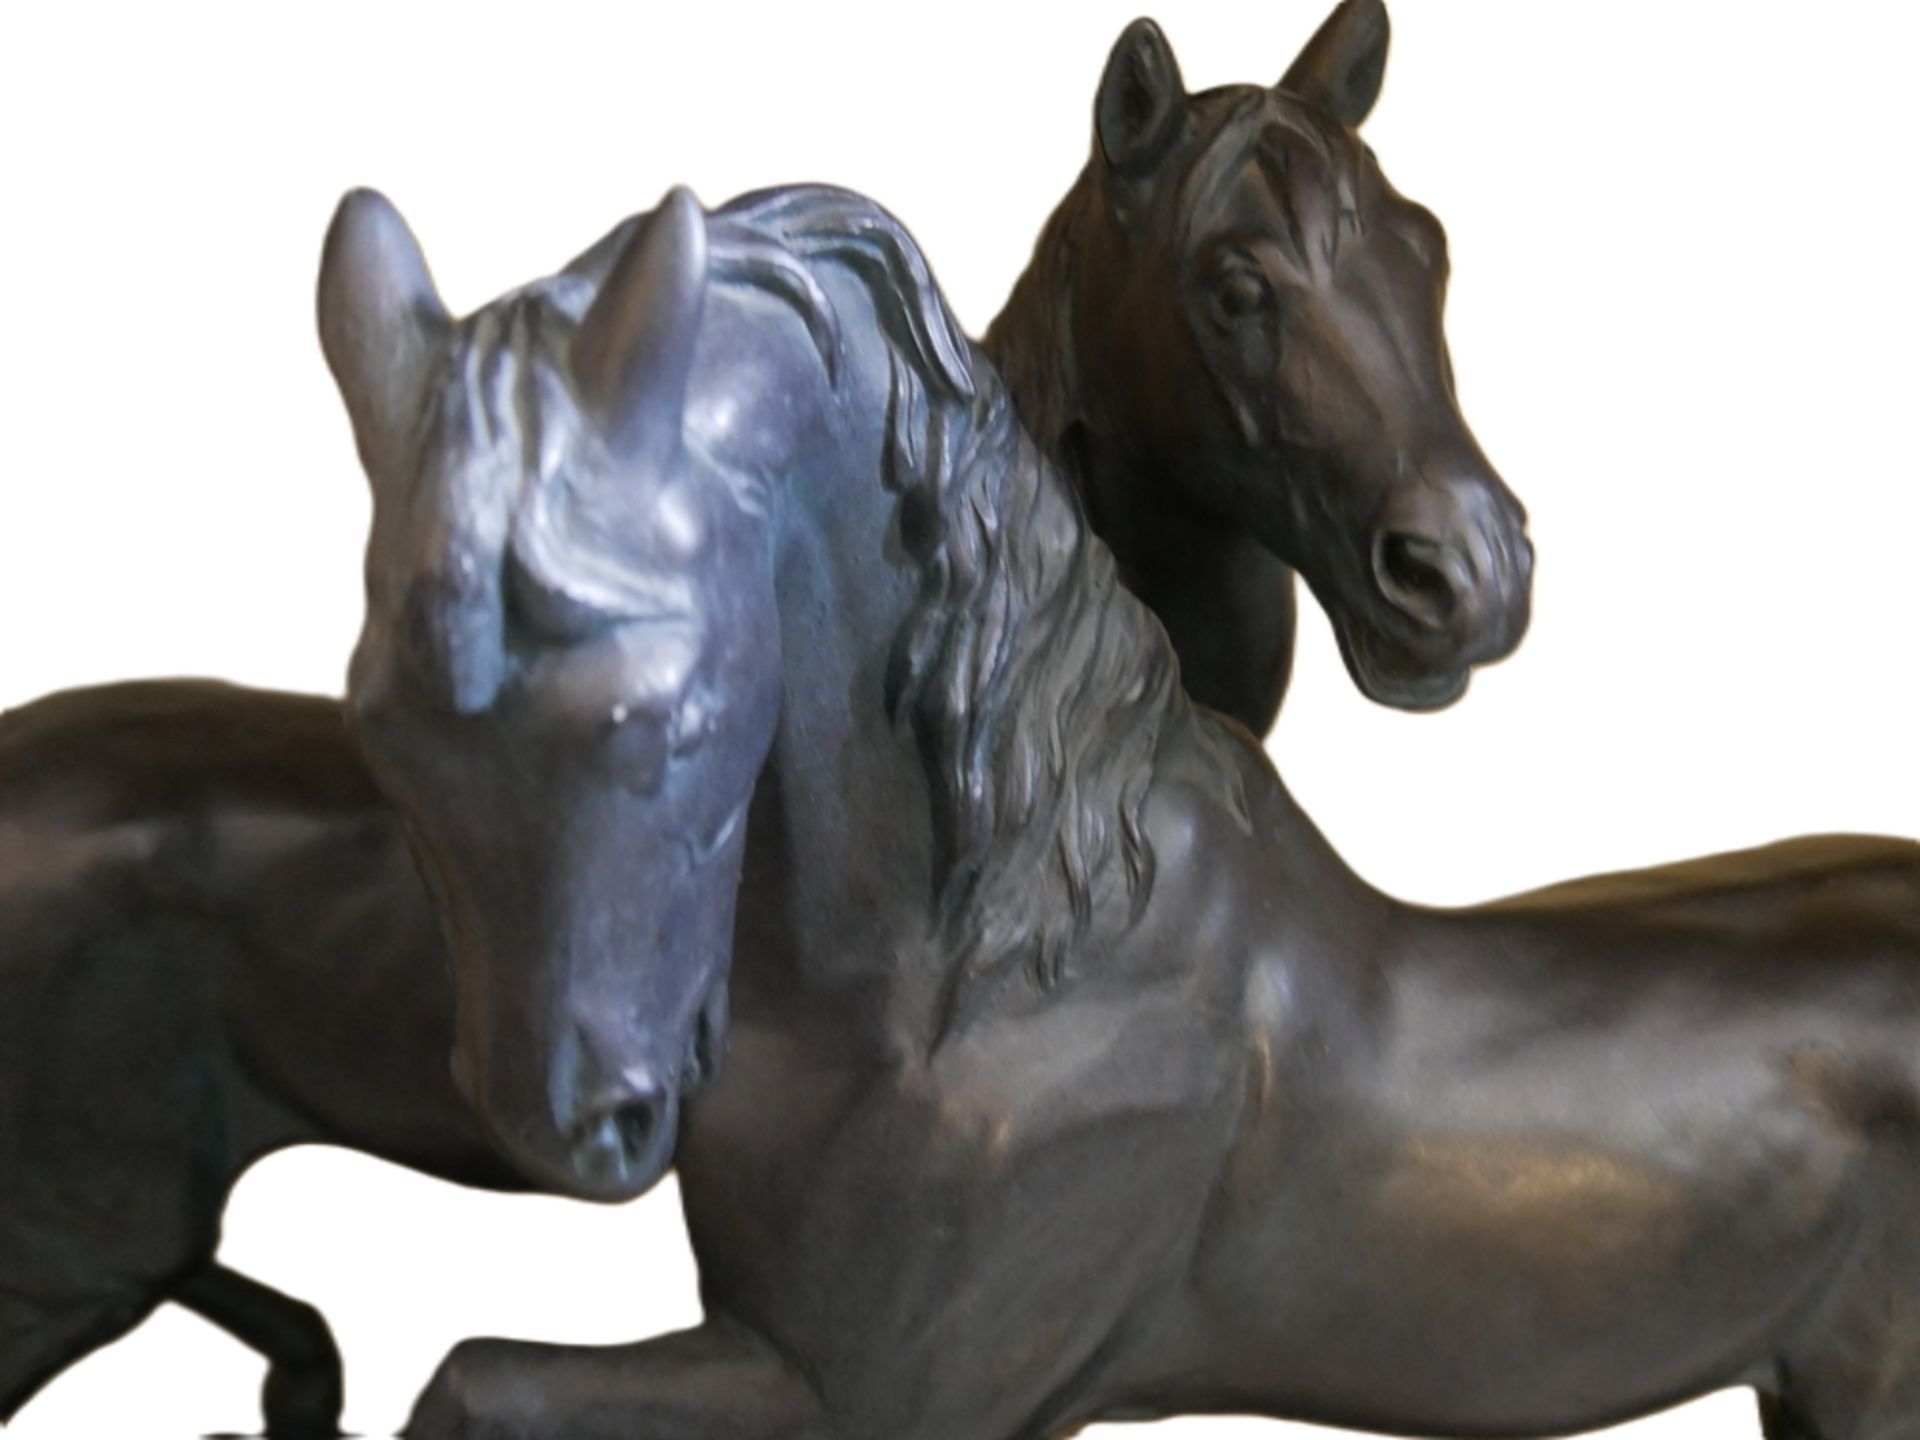 Bronze Skulptur, Austin Sculpture Holbrook New York "Free Spirits" 1980 von Claude LeClerc (1930 - ) - Bild 2 aus 4